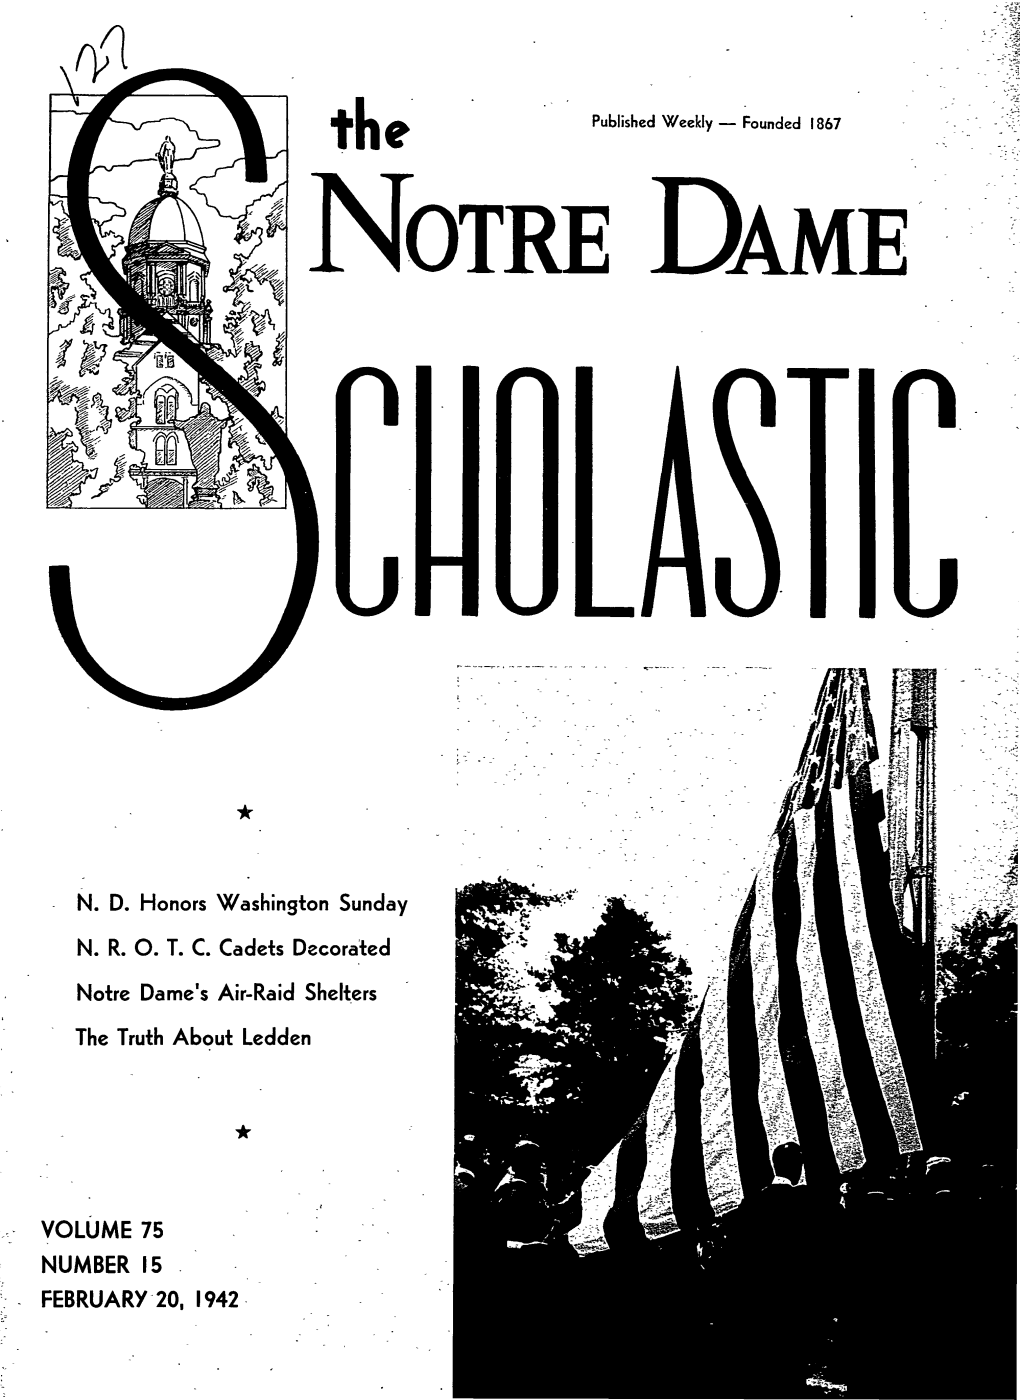 Notre Dame Scholastic, Vol. 75, No. 15